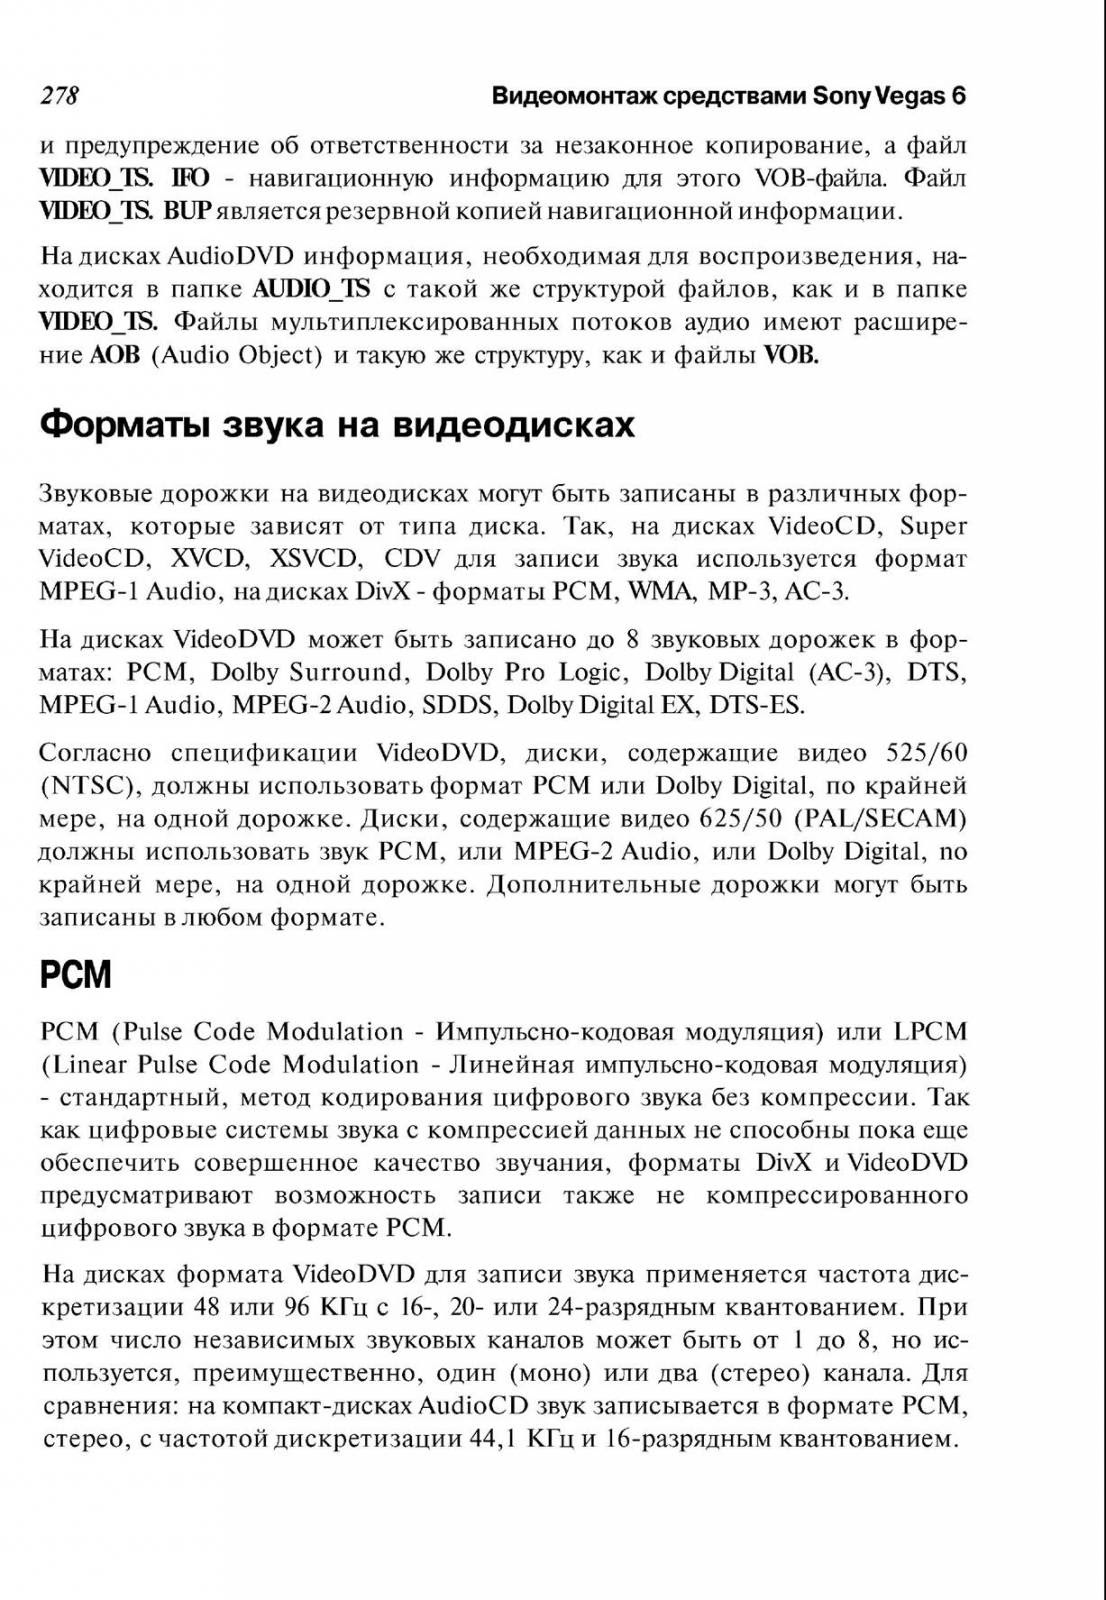 http://redaktori-uroki.3dn.ru/_ph/14/348776673.jpg